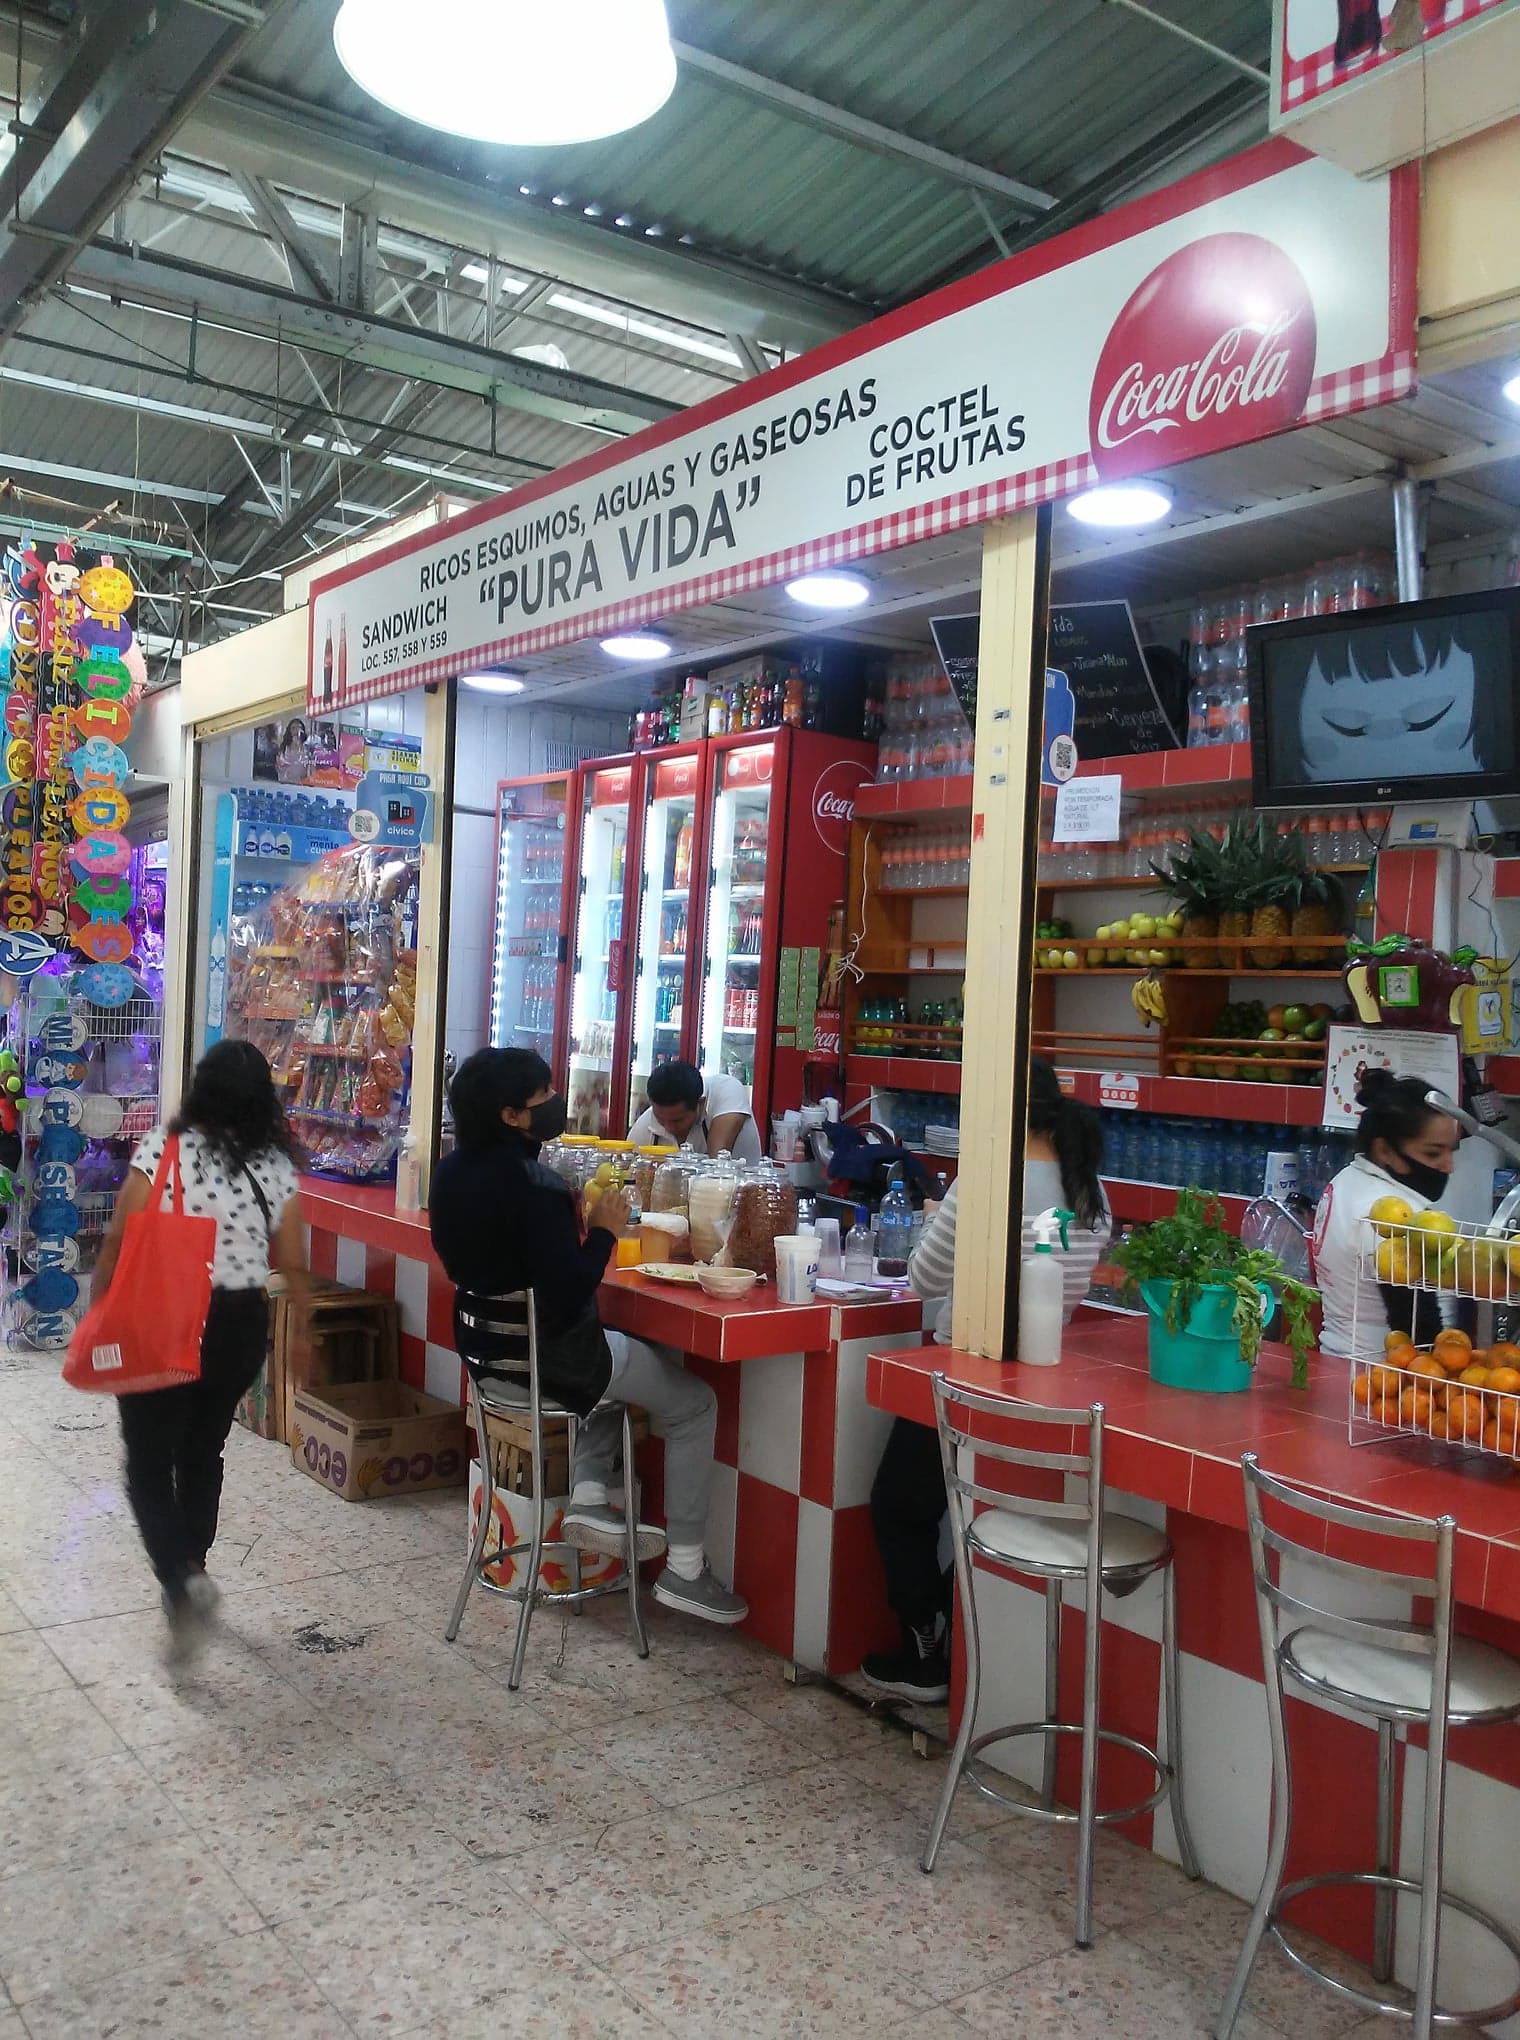  Mercado Martínez de la Torre - Pura Vida